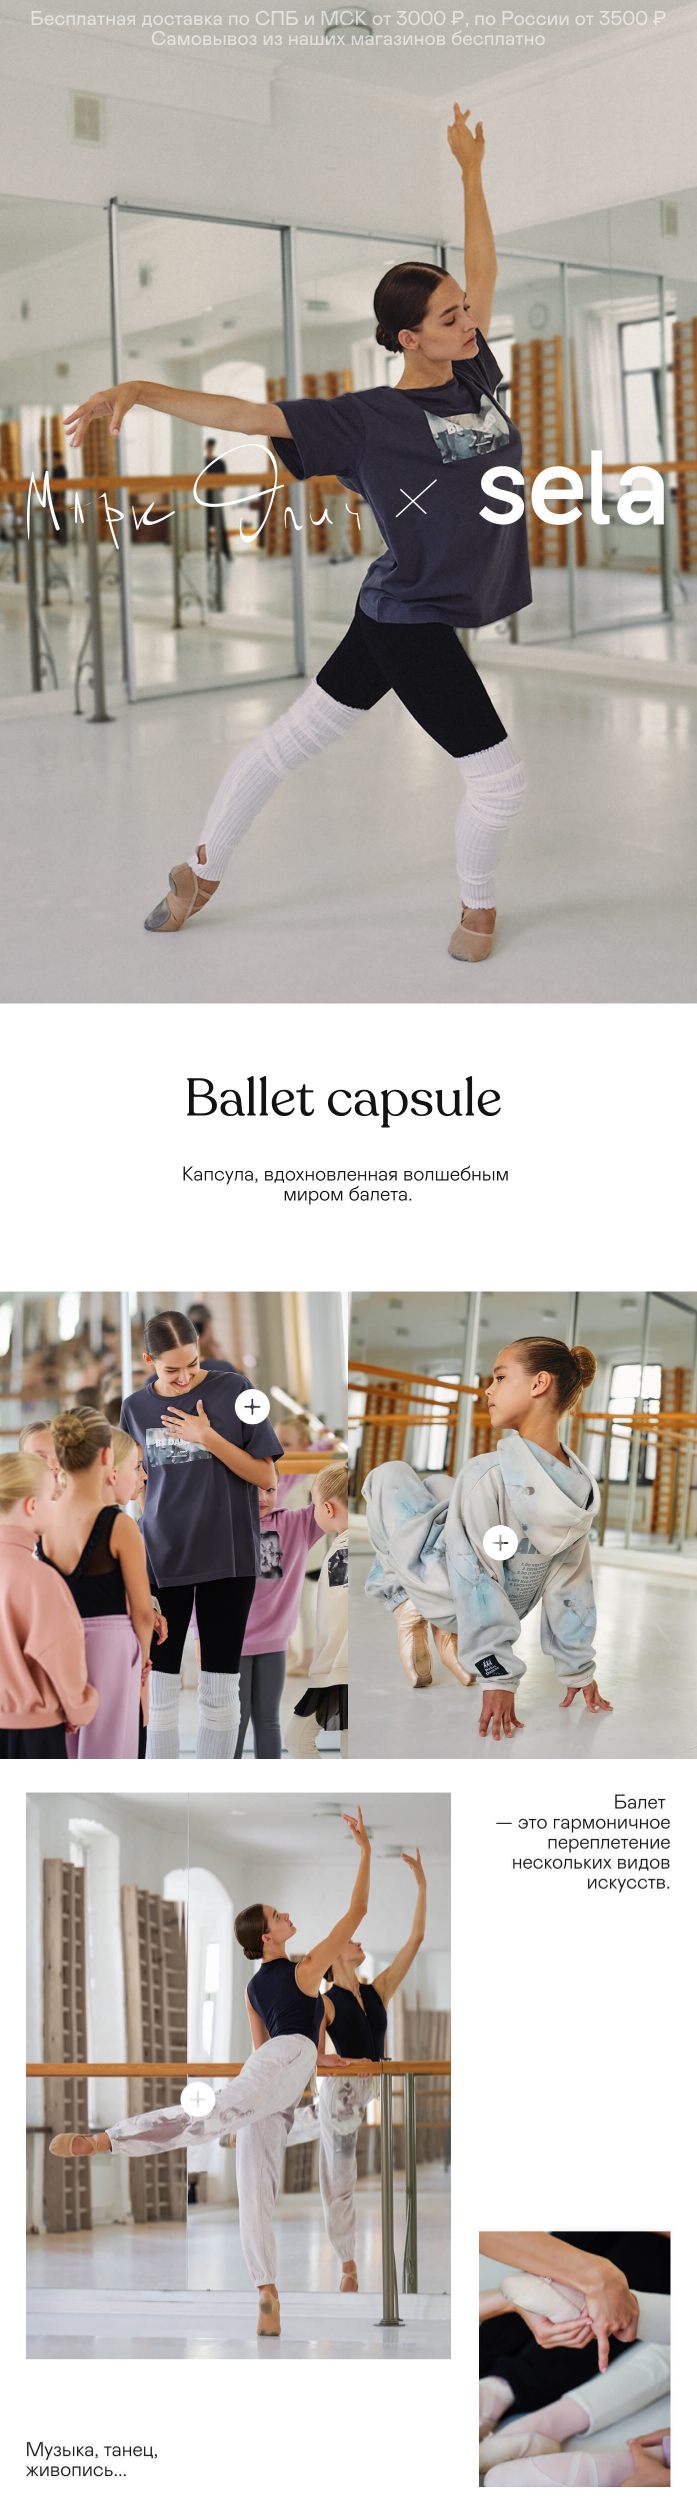 лимитированная коллекция Sela для балерин